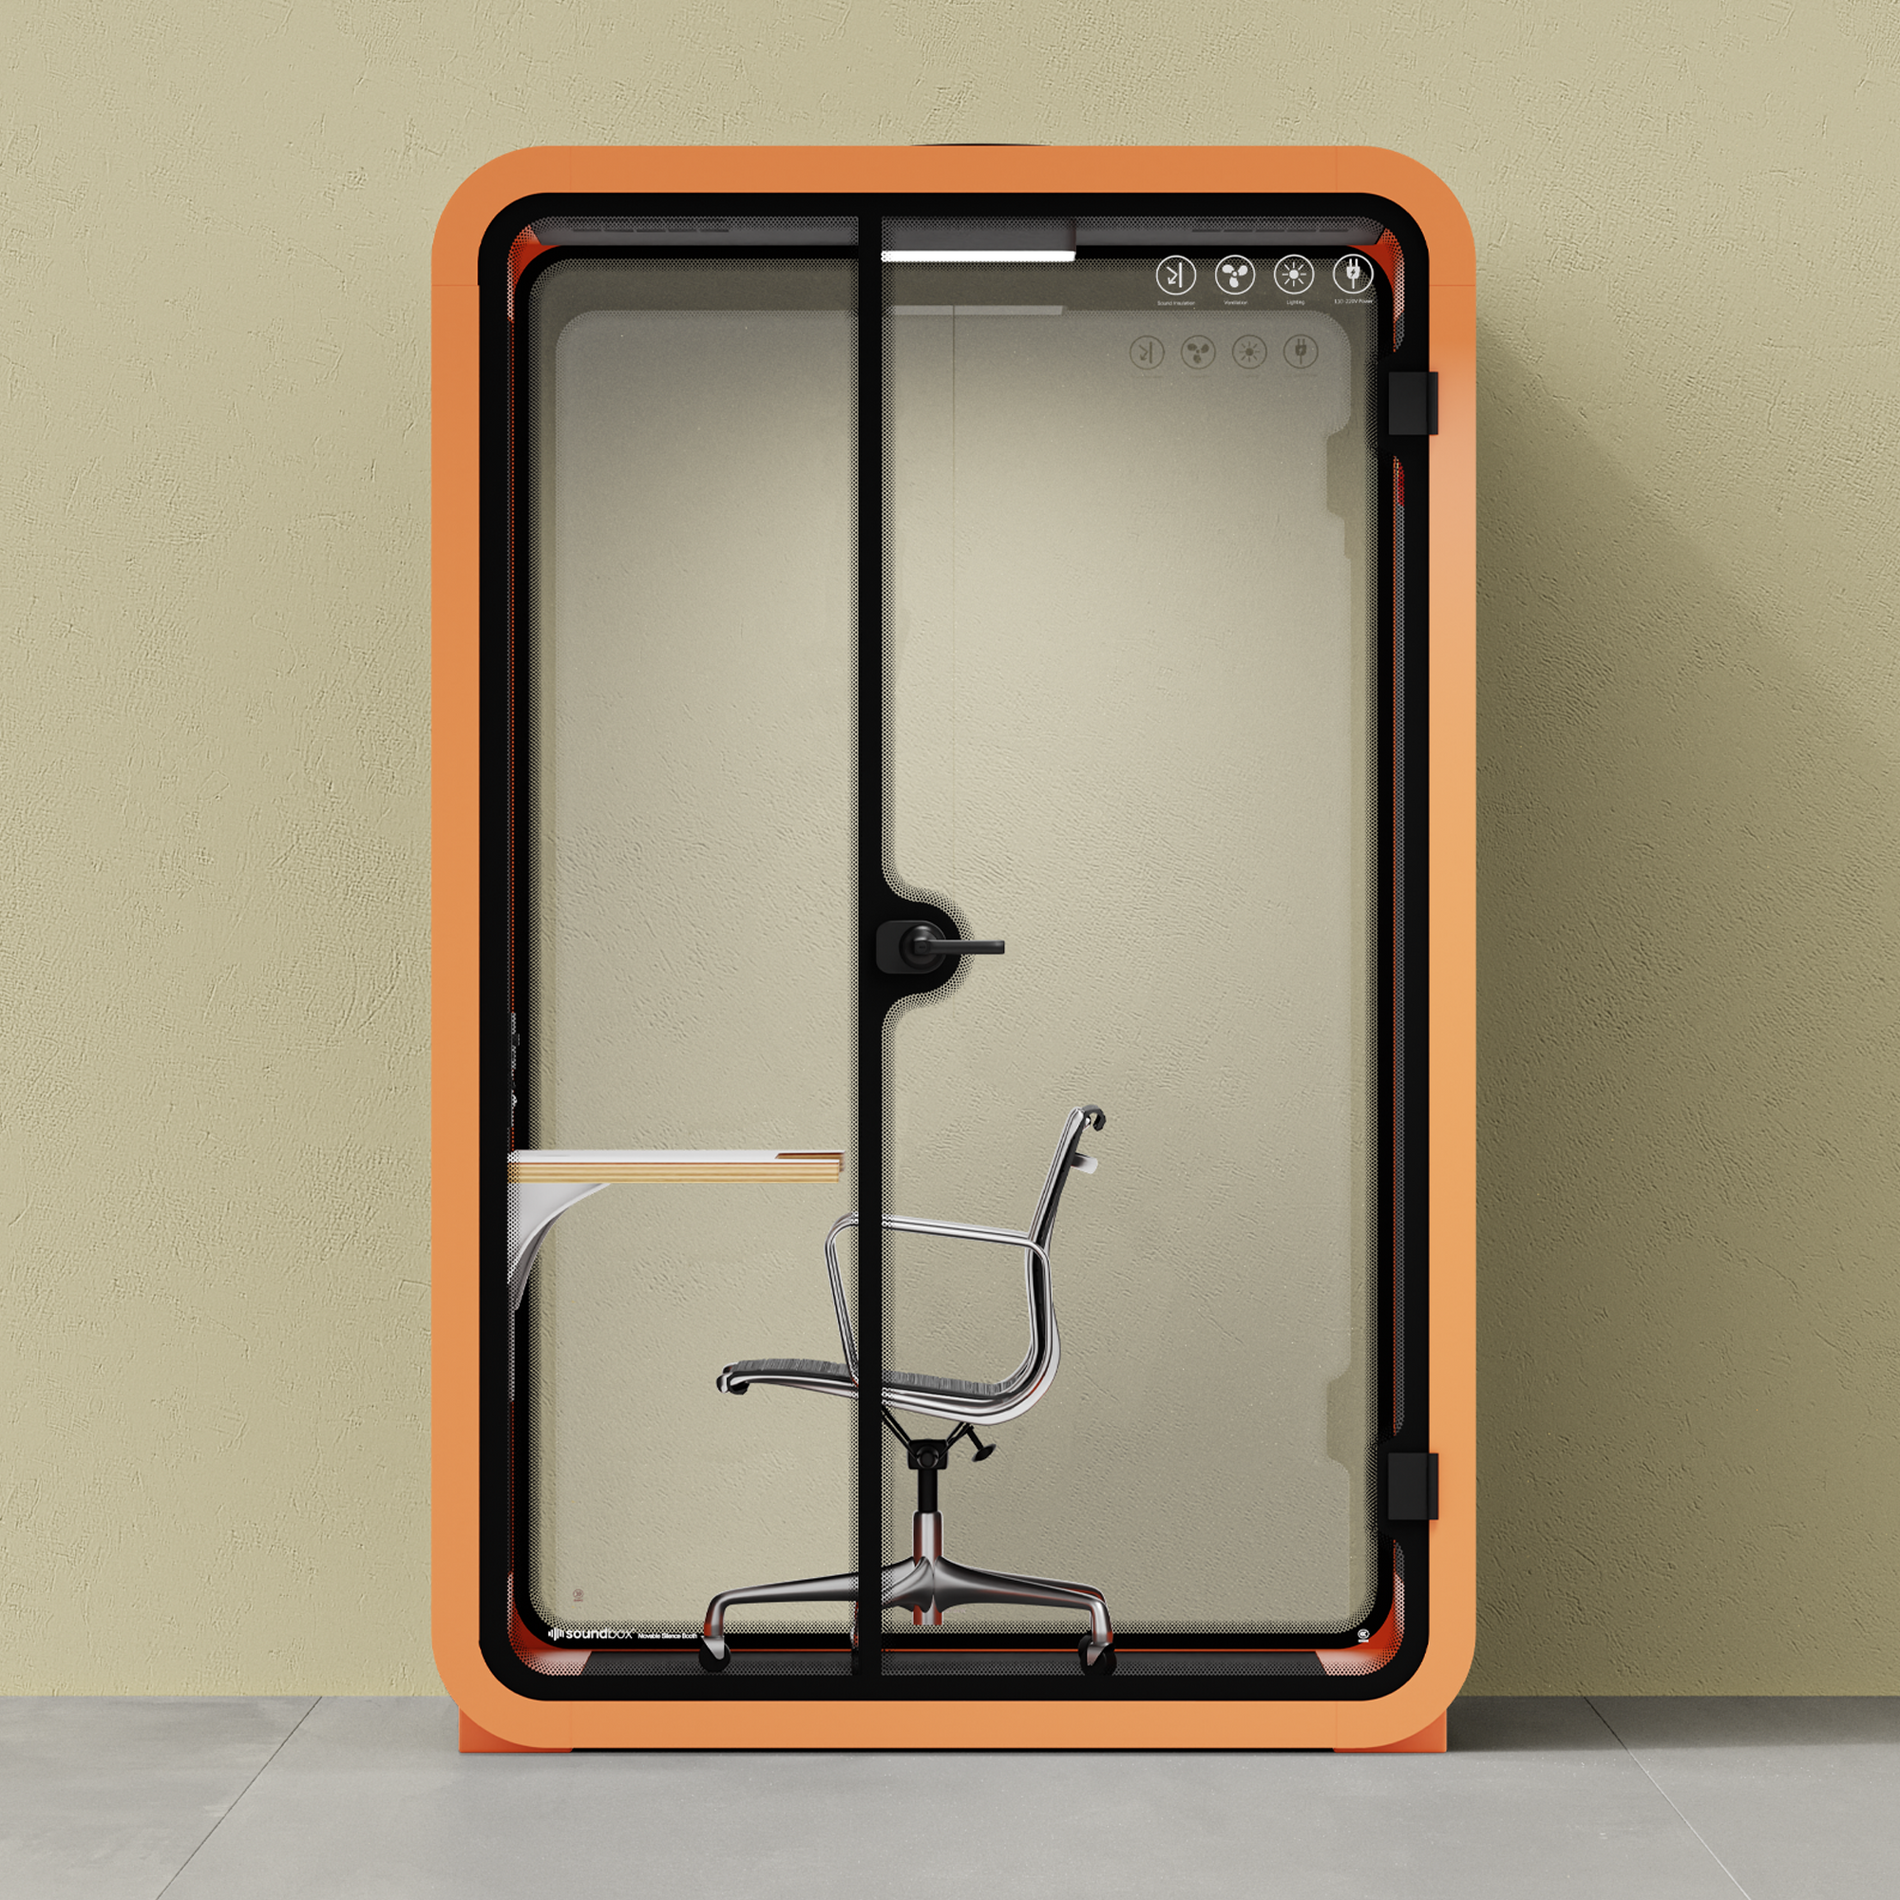 Quell Cabina telefonica da ufficio per due personeOrange / Dark Gray / Work Station + Designer Office Chair